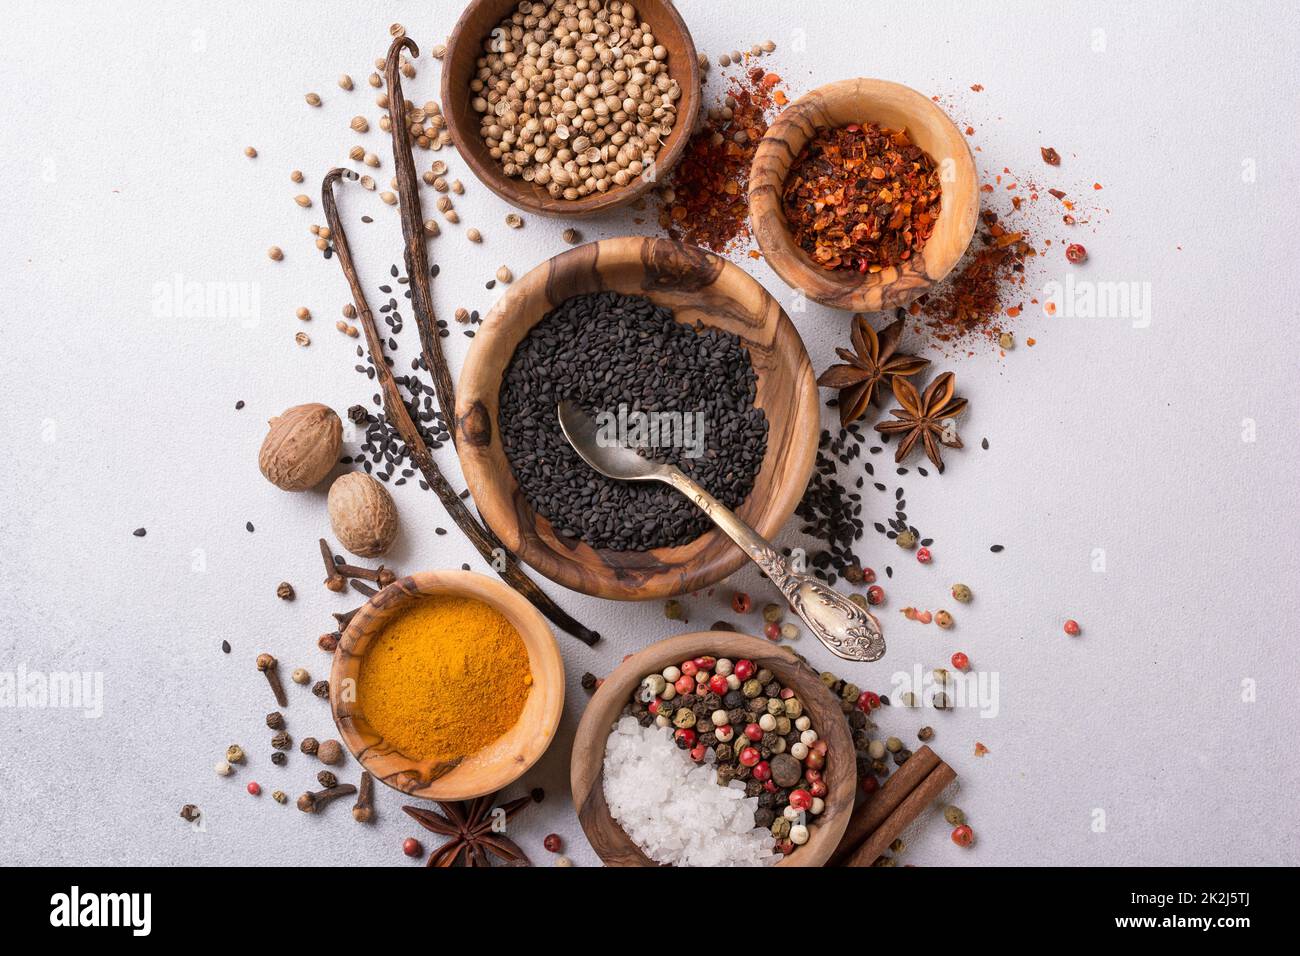 Draufsicht auf Mix helle Gewürze oder Gewürze in kleinen Holzschüsseln als Zutat für gesunde Lebensmittel auf grauem Beton-Hintergrund Stockfoto